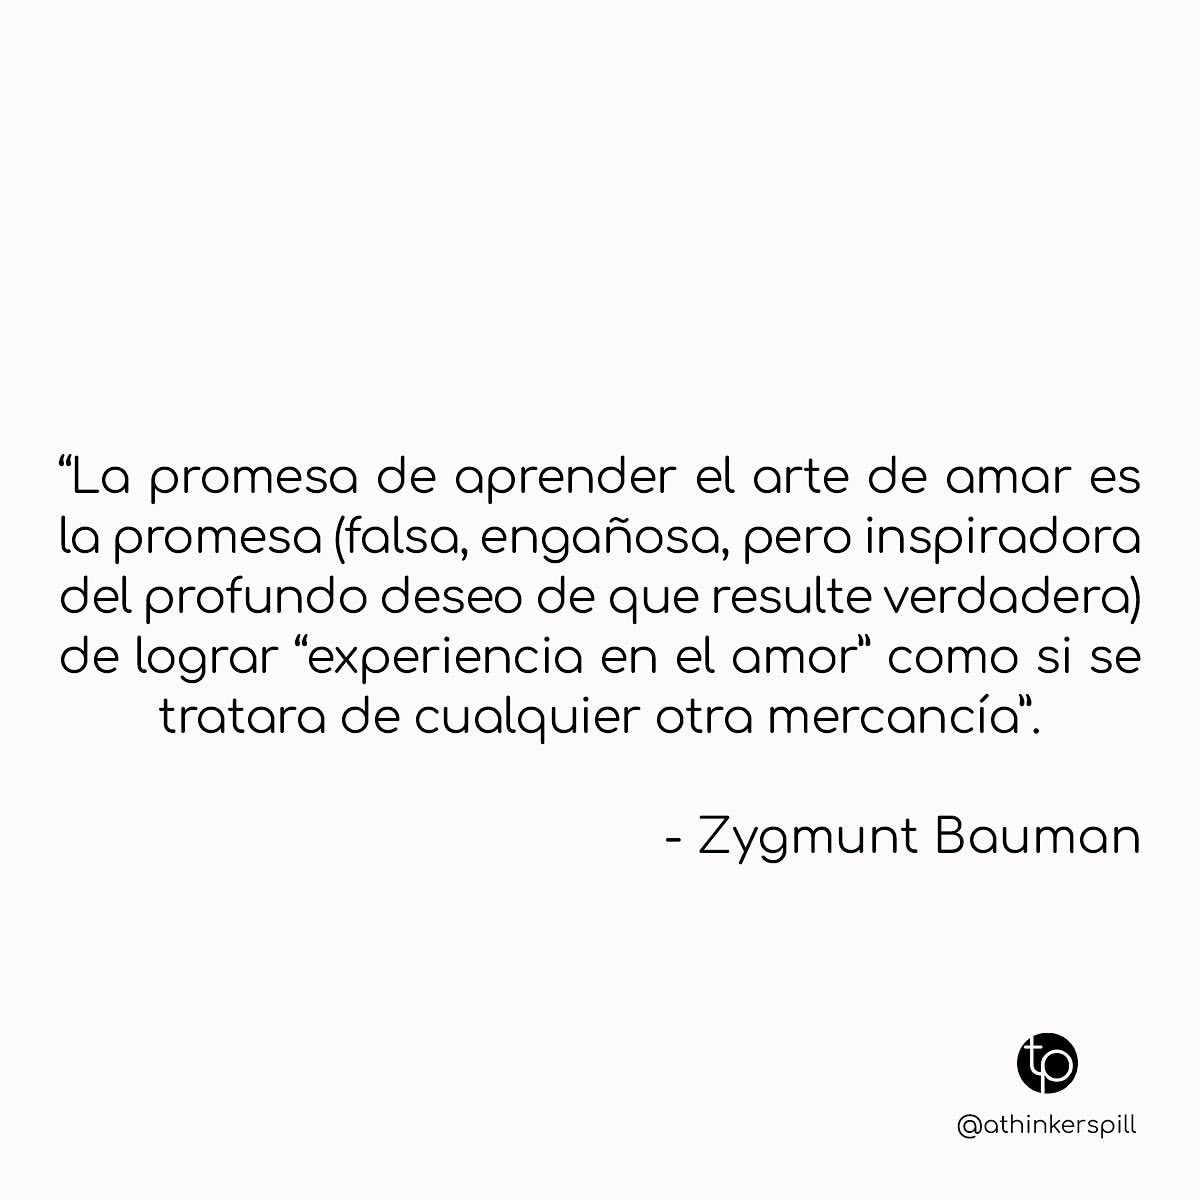 "La promesa de aprender el arte de amar es la promesa (falsa, engañosa, pero inspiradora del profundo deseo de que resulte verdadera) de lograr "experiencia en el amor» como si se tratara de cualquier otra mercancía". Zygmunt Bauman.